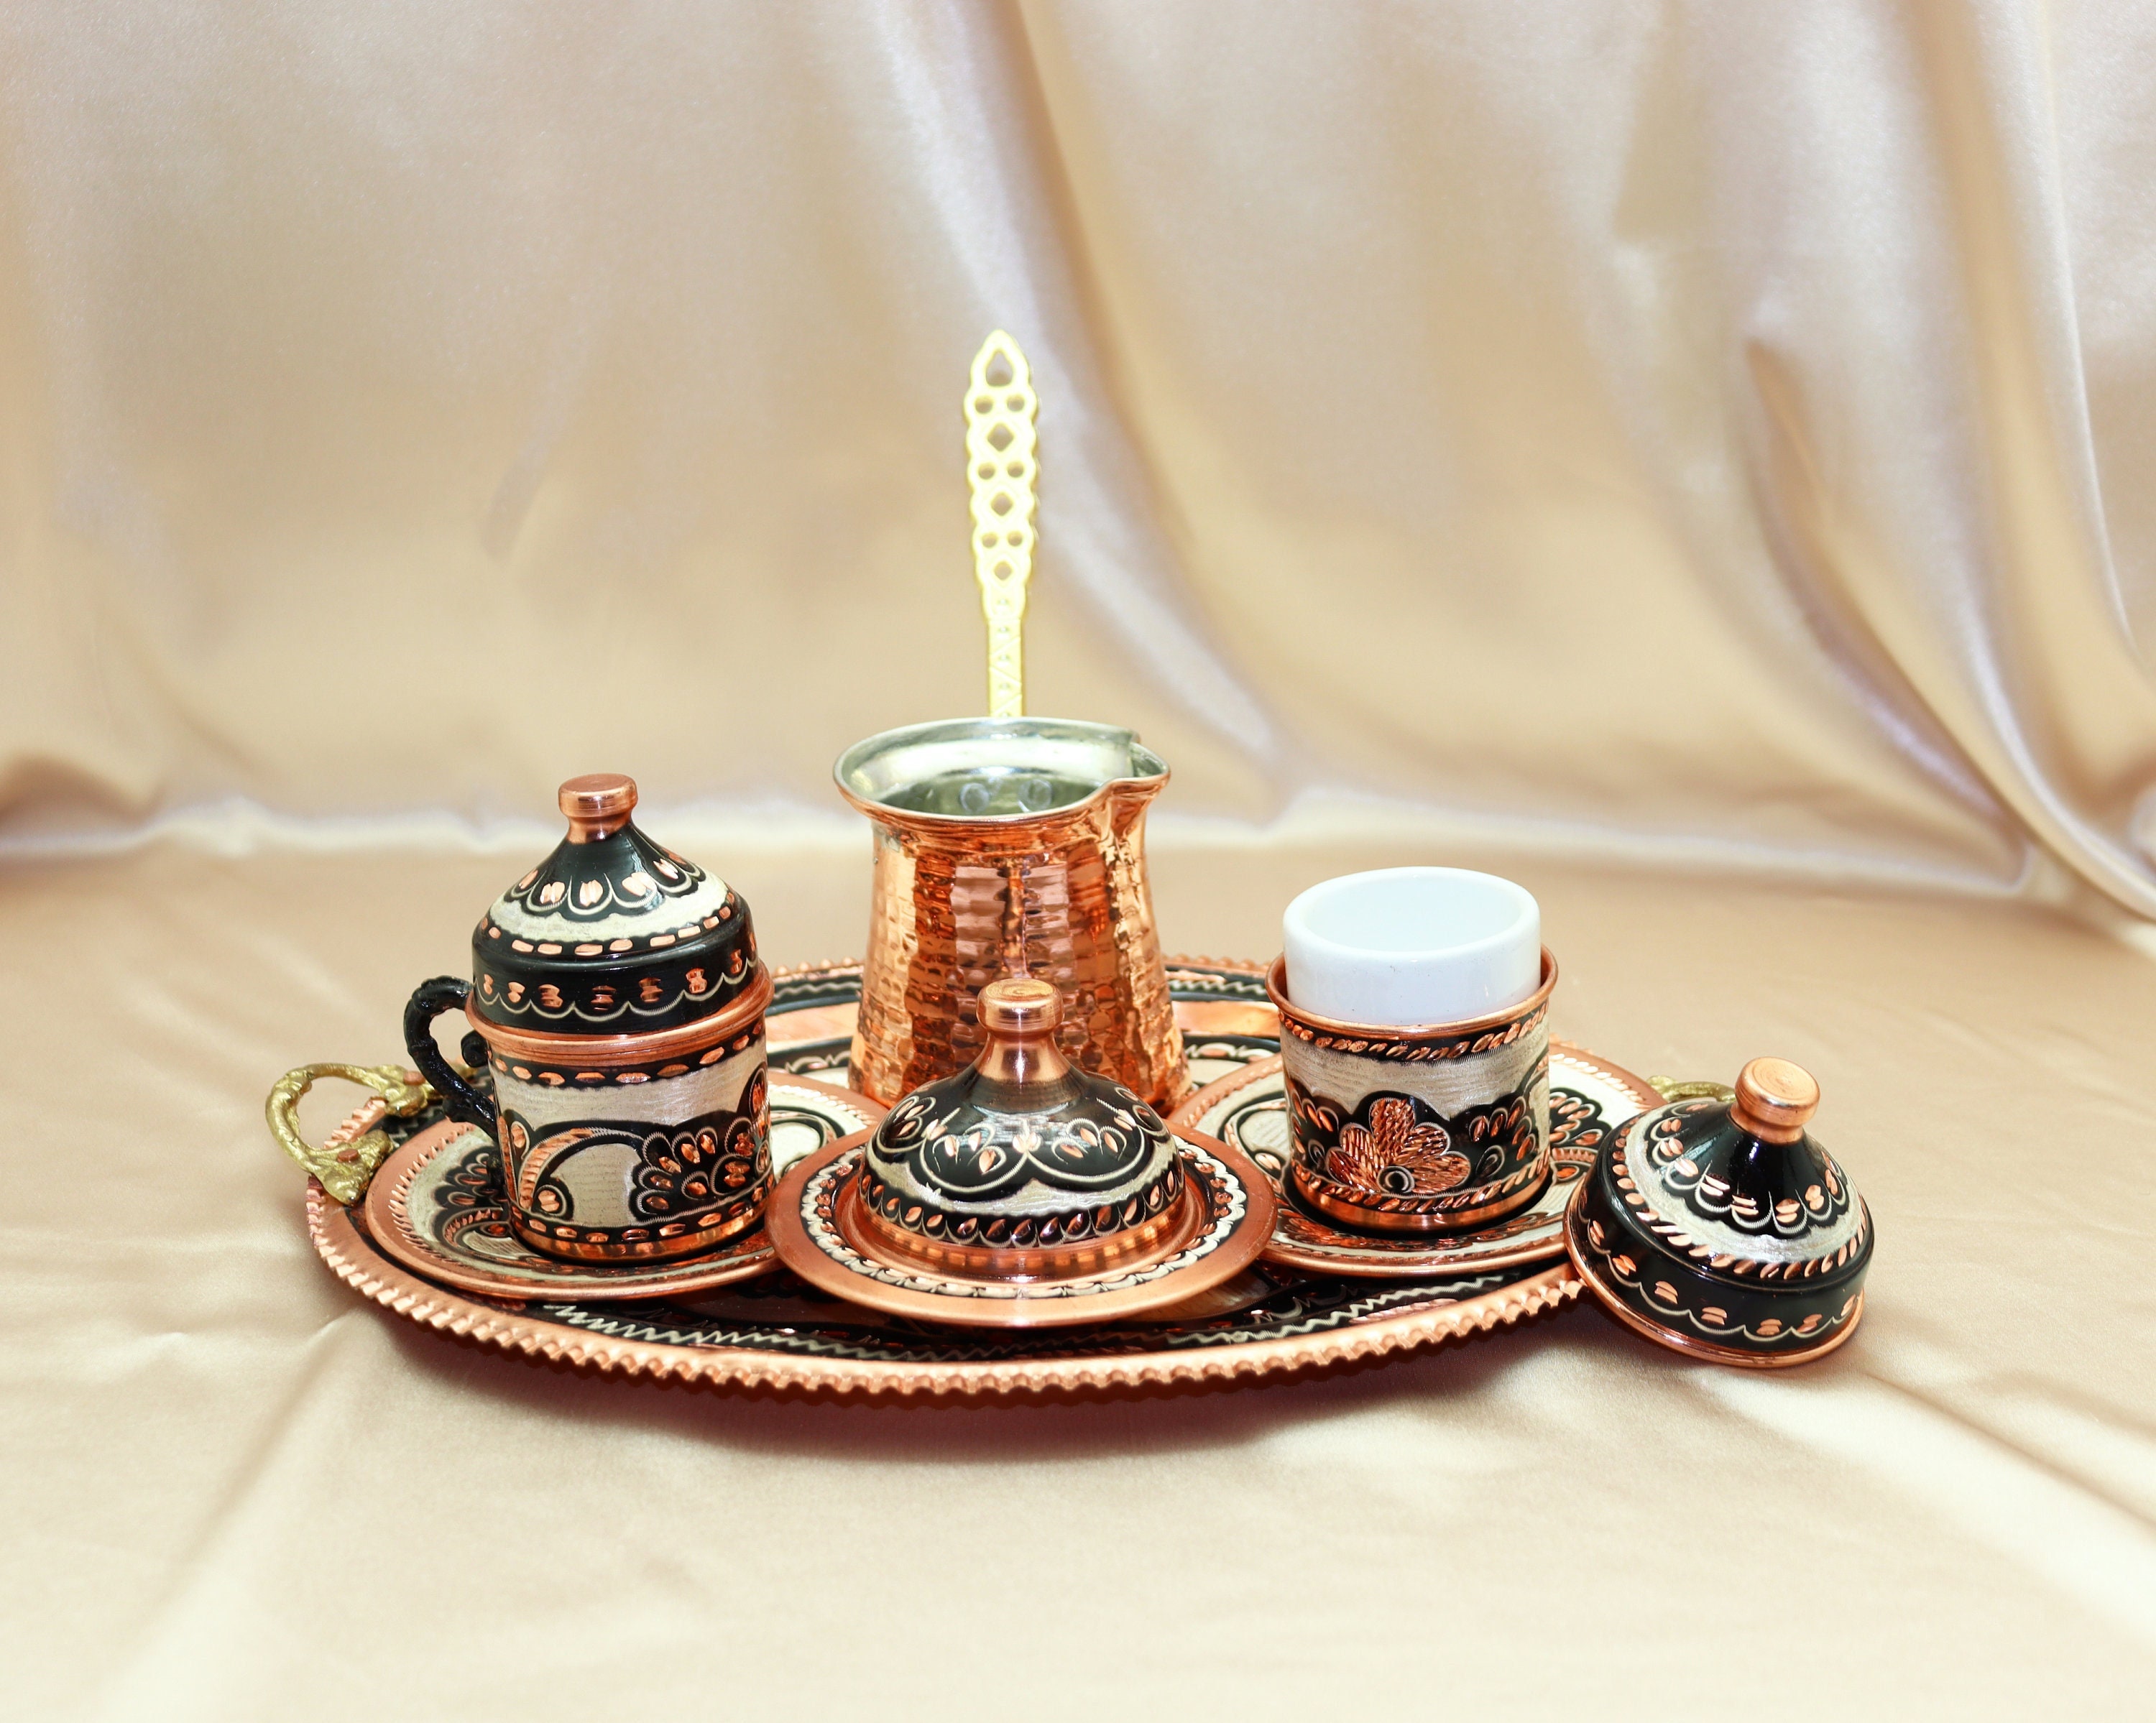 Cafetera turca y tazas en bandeja de madera